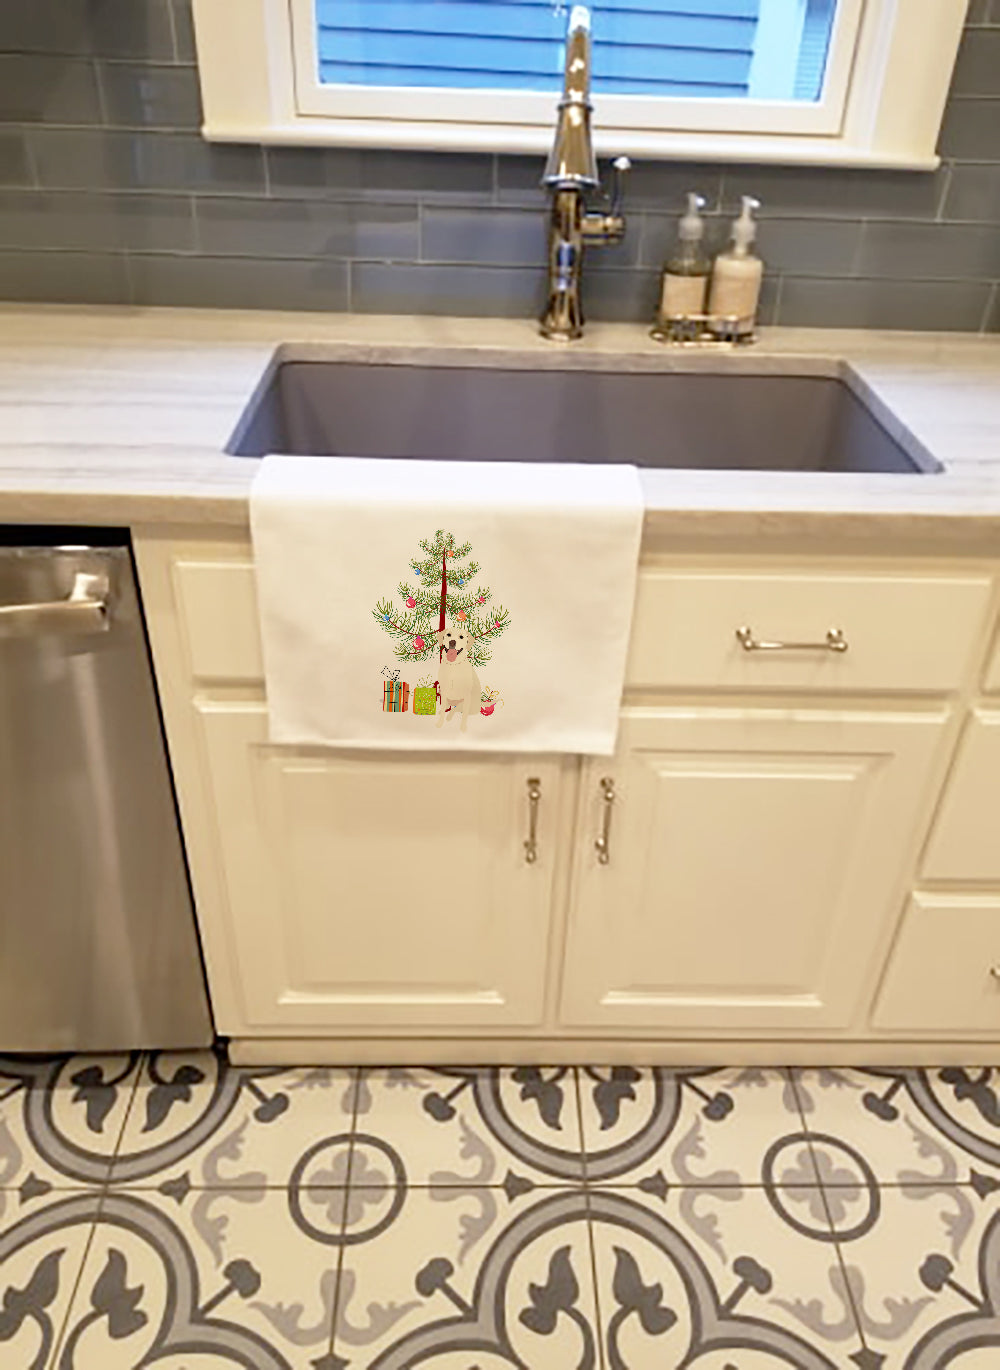 Buy this Labrador Retriever Yellow #1 Christmas White Kitchen Towel Set of 2